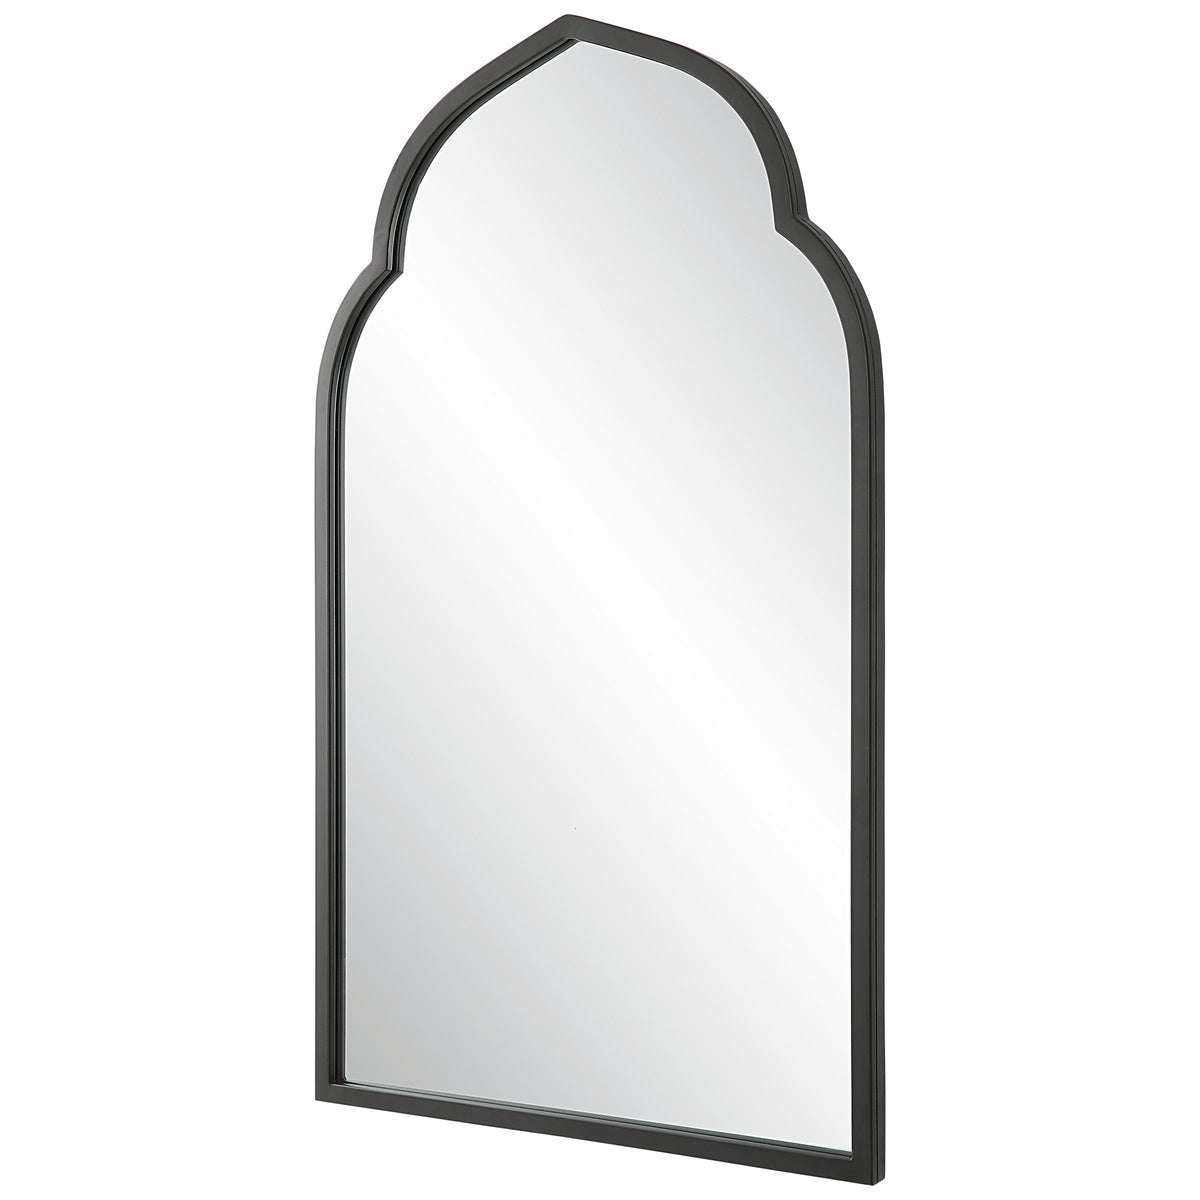 Uttermost Kenitra Black Arch Mirror